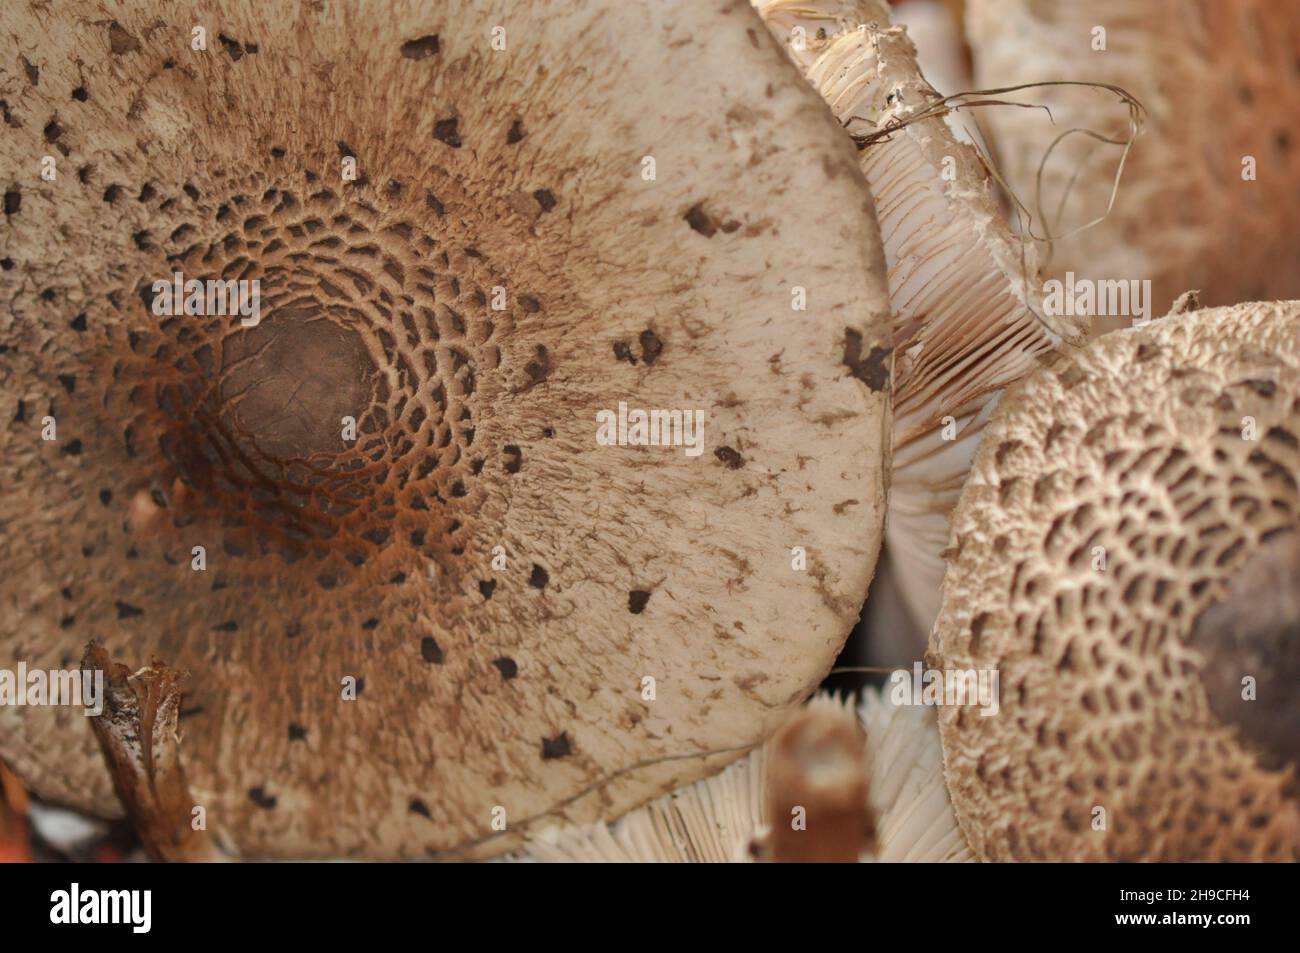 Macrolepiota procera, der Sonnenschirmpilz - Hintergrund eines essbaren Pilzes aus Deutschland und der EU - Pilze aus nächster Nähe Stockfoto